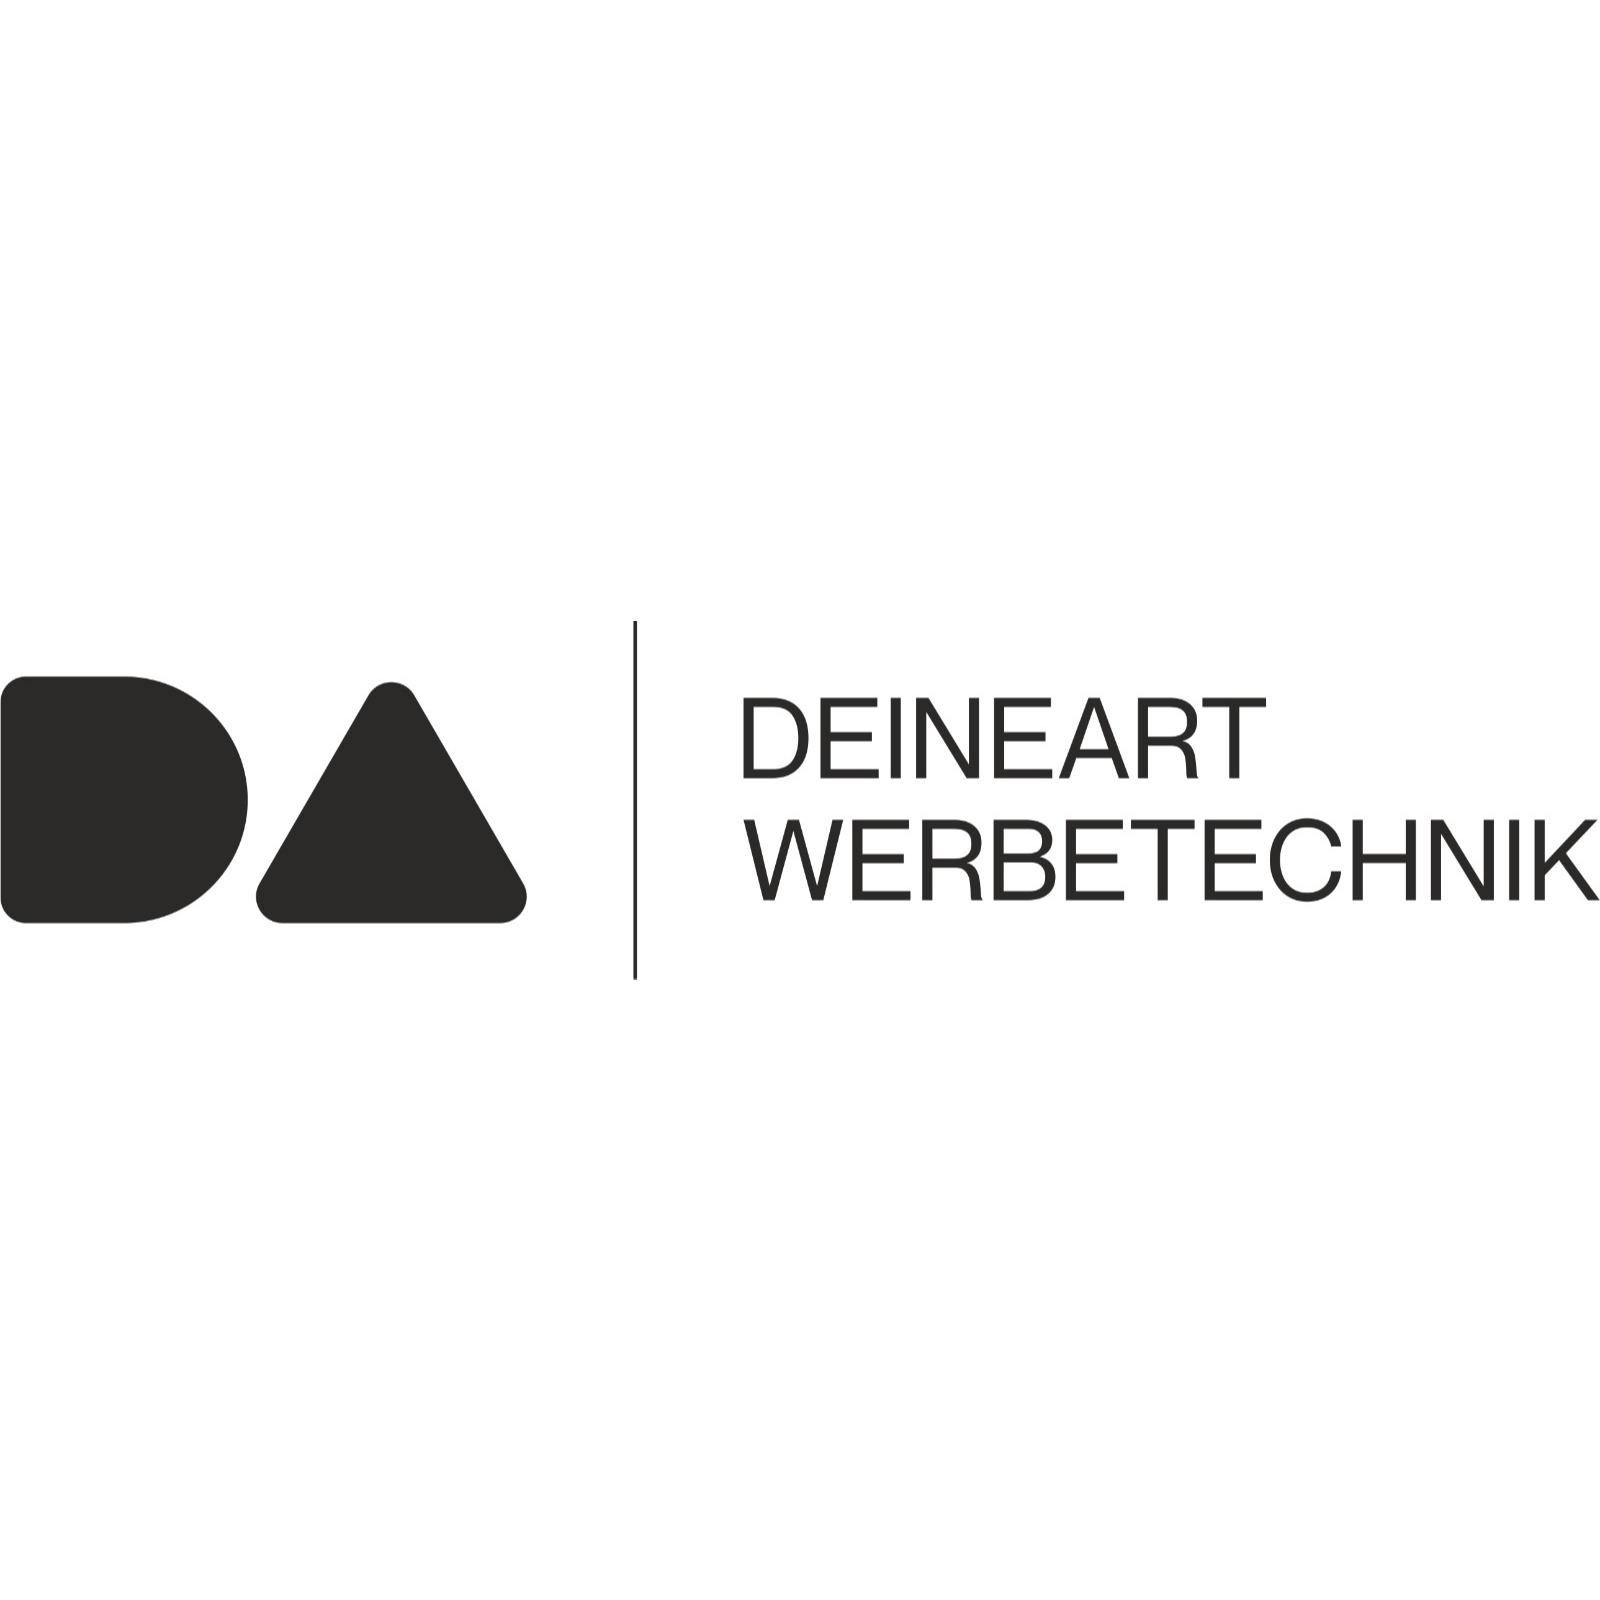 DEINEART WERBETECHNIK in Hanau - Logo